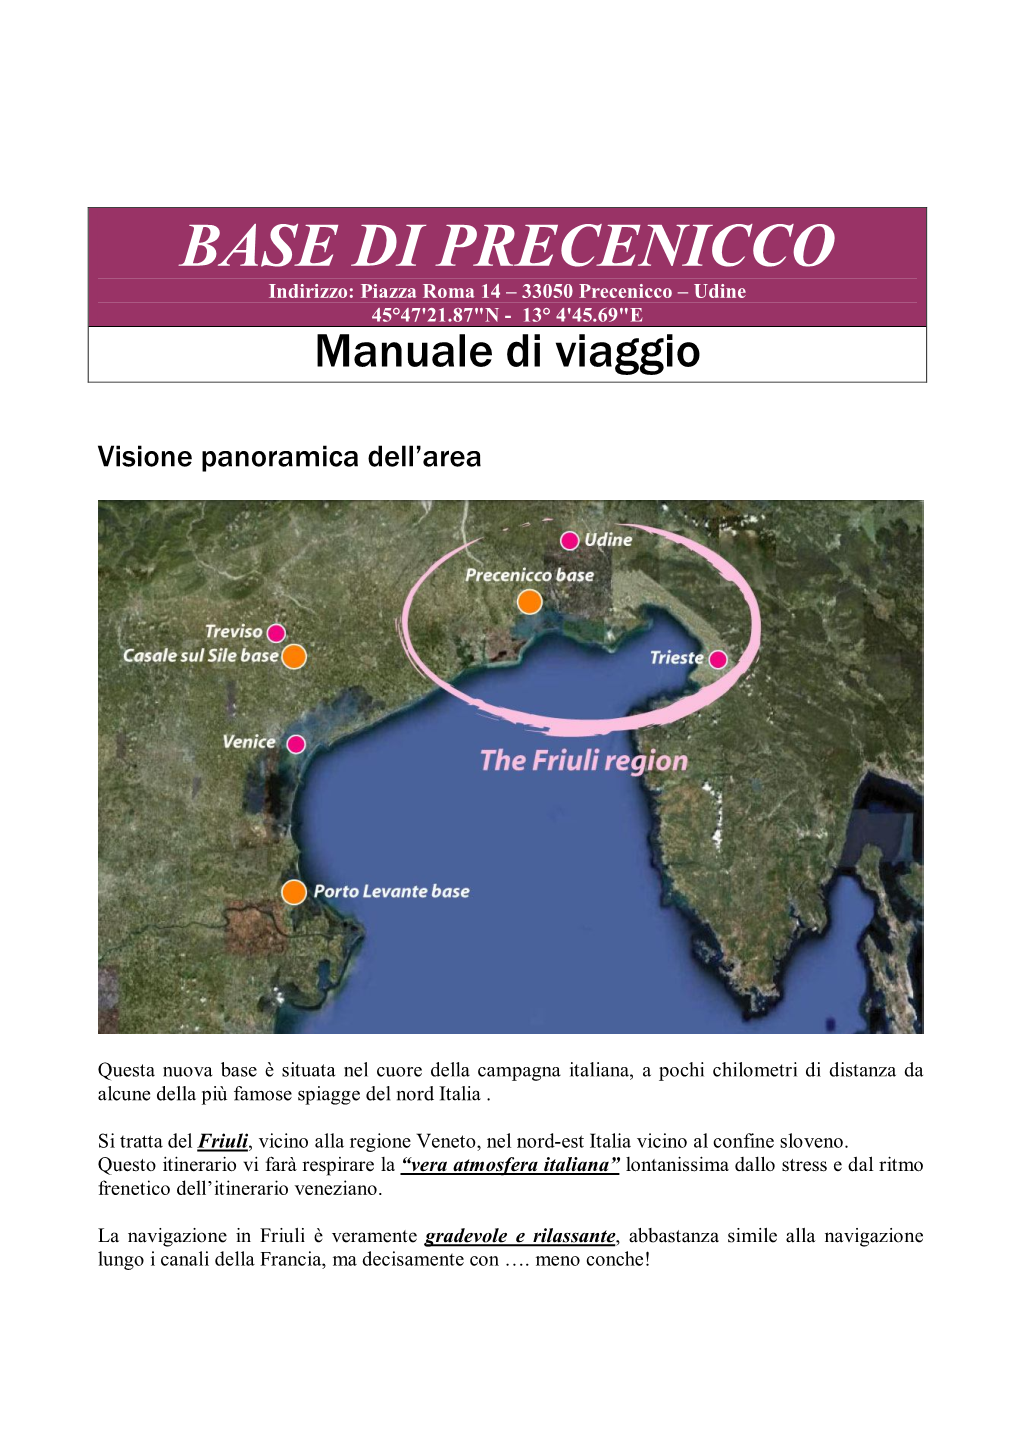 BASE DI PRECENICCO Indirizzo: Piazza Roma 14 – 33050 Precenicco – Udine 45°47'21.87"N - 13° 4'45.69"E Manuale Di Viaggio